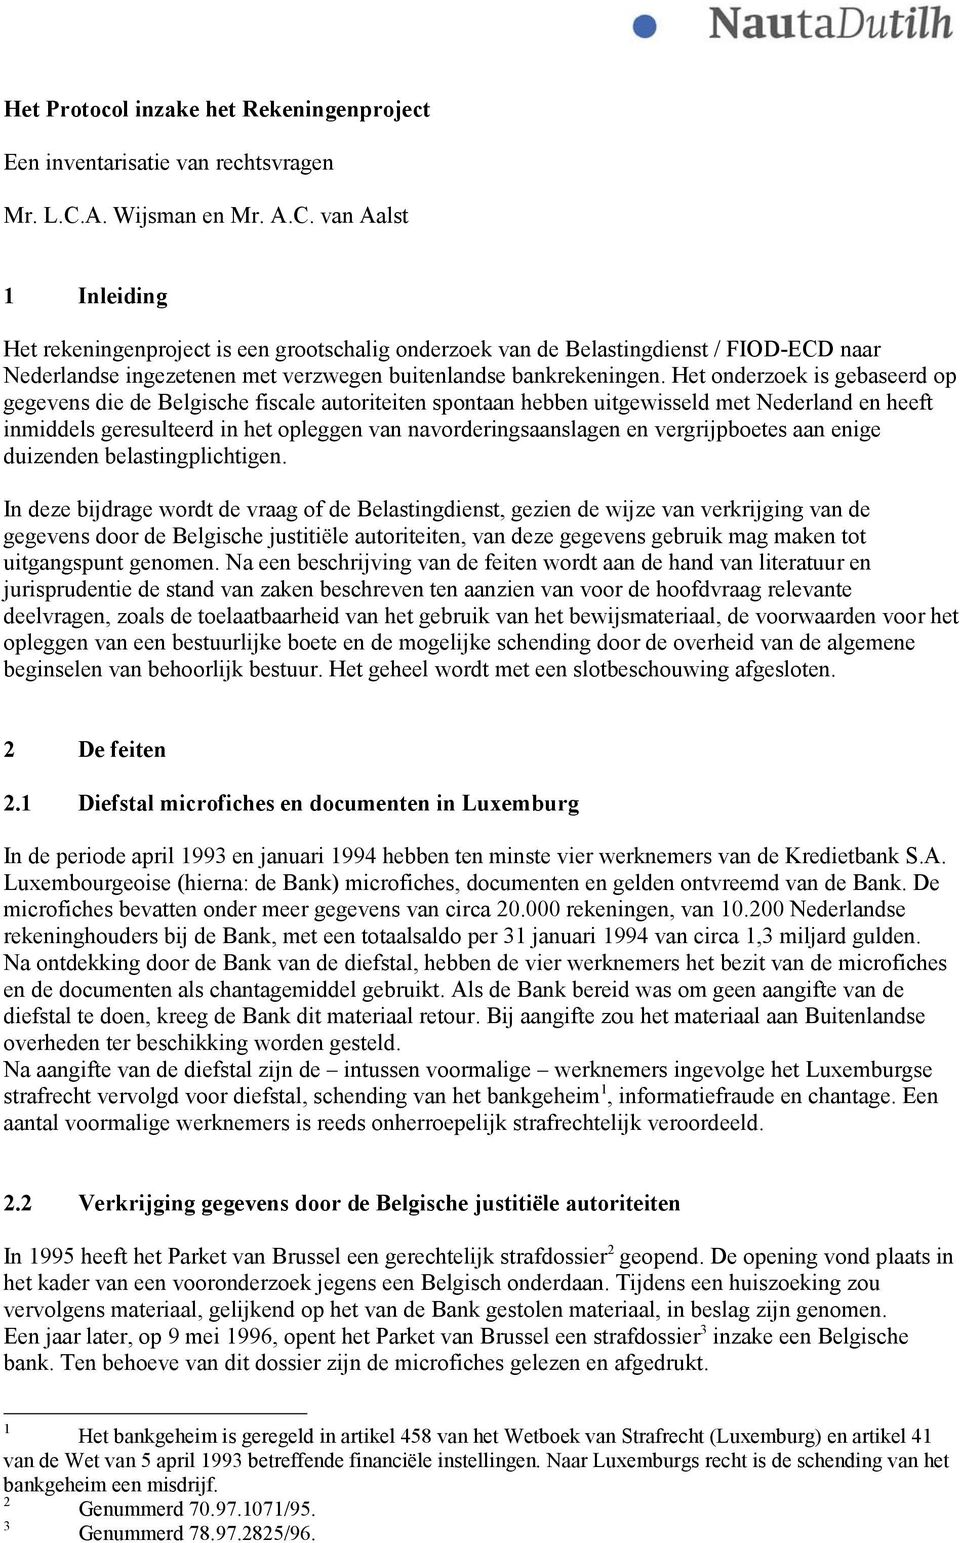 van Aalst 1 Inleiding Het rekeningenproject is een grootschalig onderzoek van de Belastingdienst / FIOD-ECD naar Nederlandse ingezetenen met verzwegen buitenlandse bankrekeningen.